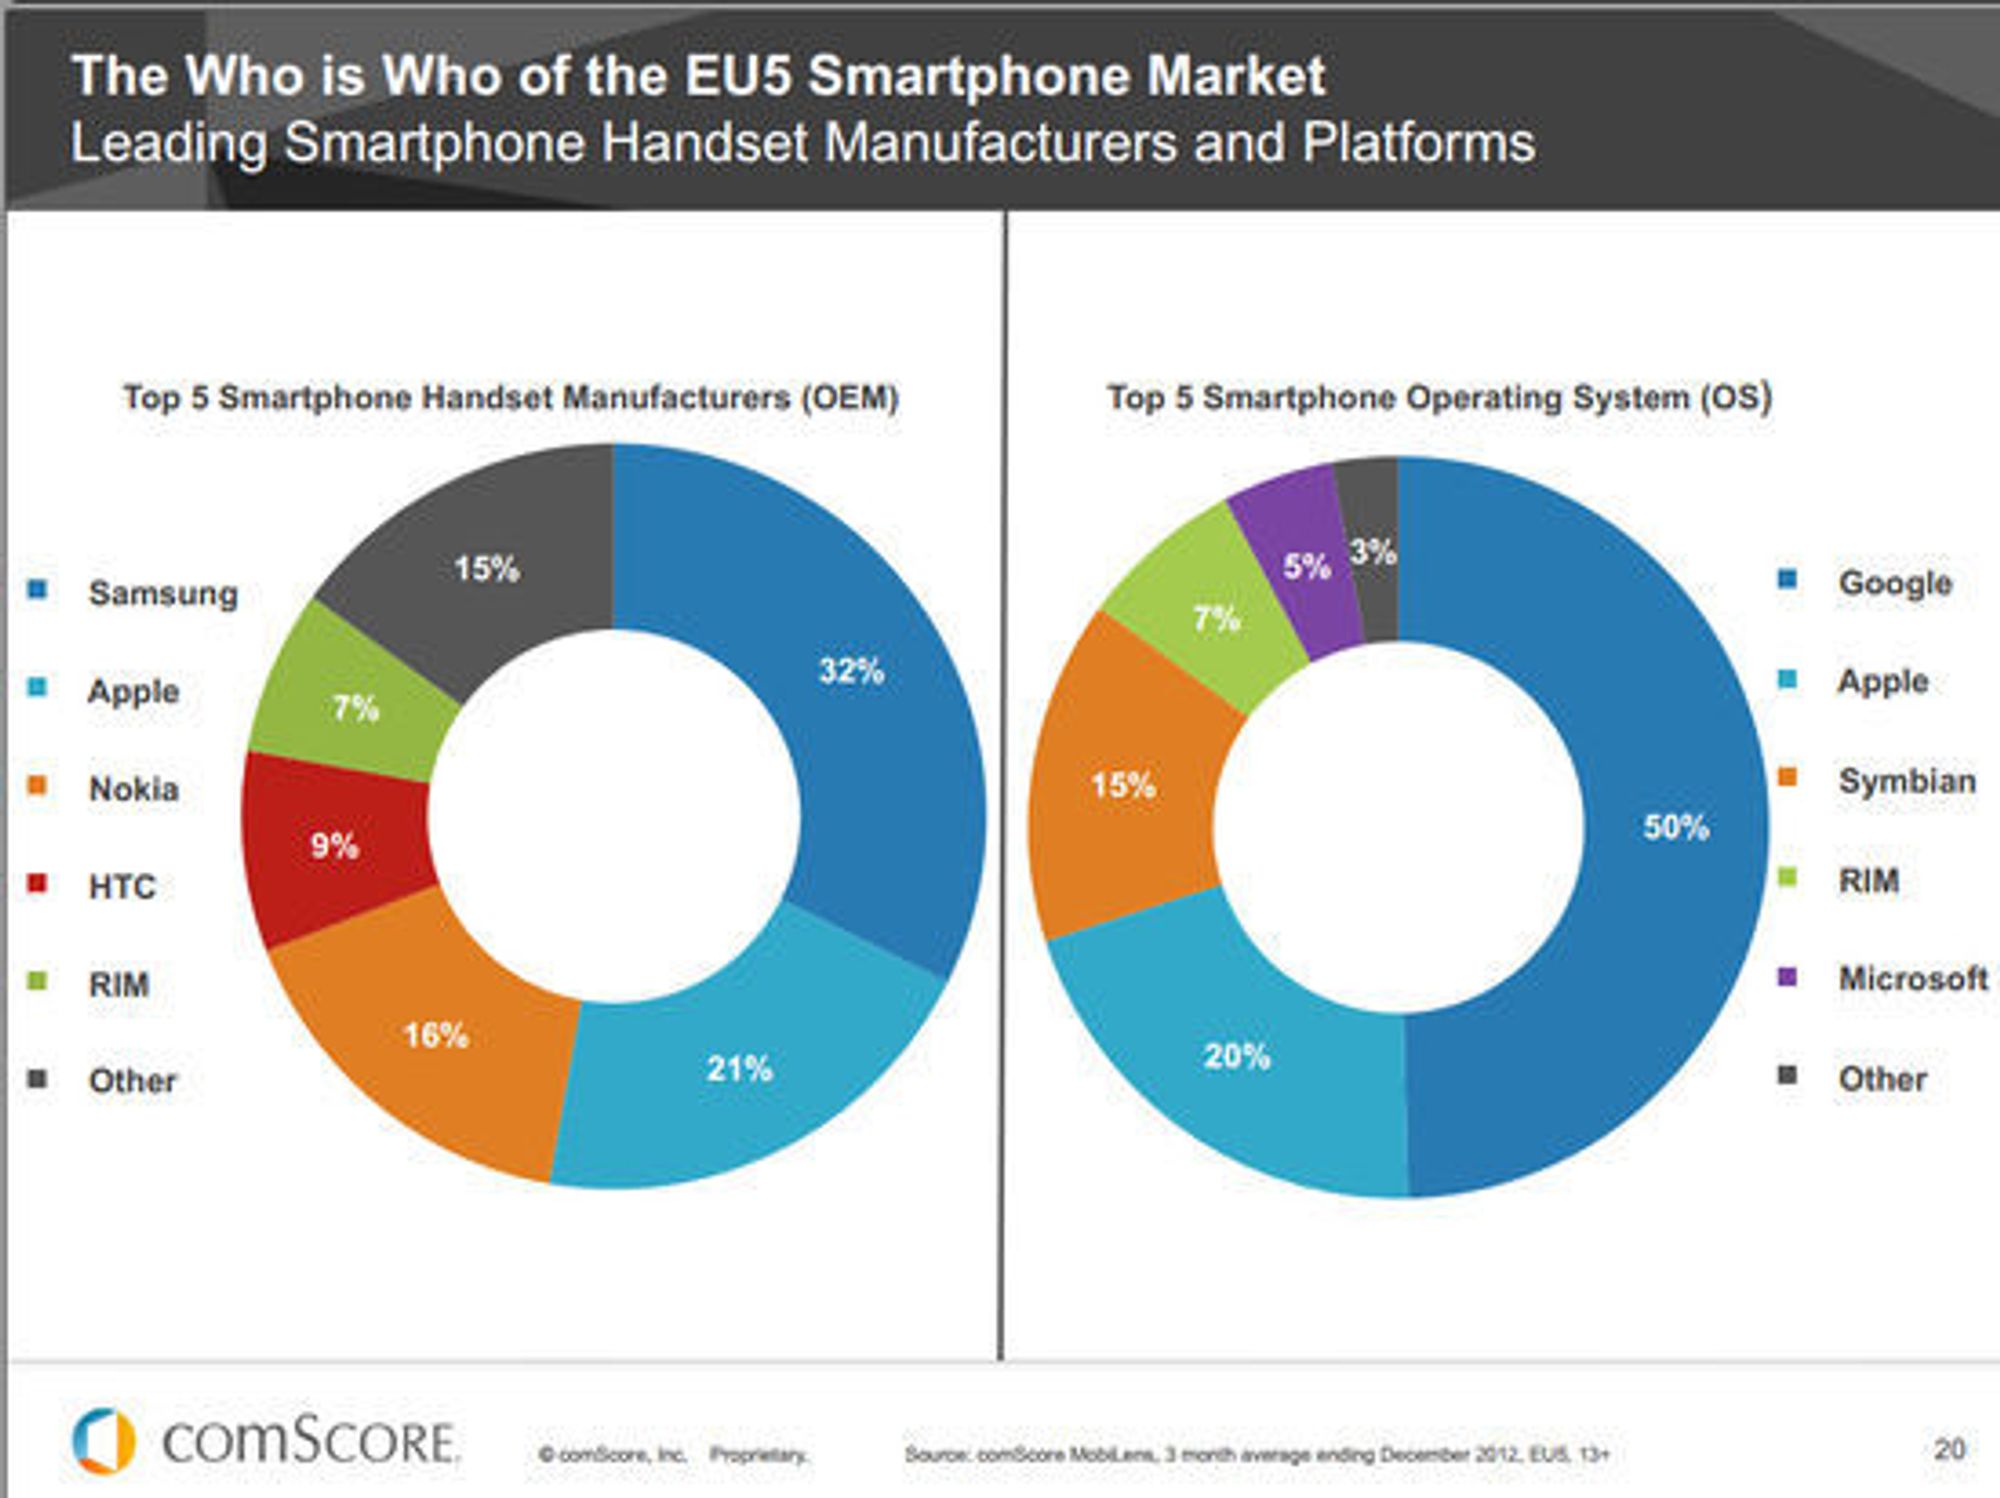 Smartmobilprodusentene og -plattformene som er mest utbredt i de fem største landene i EU.